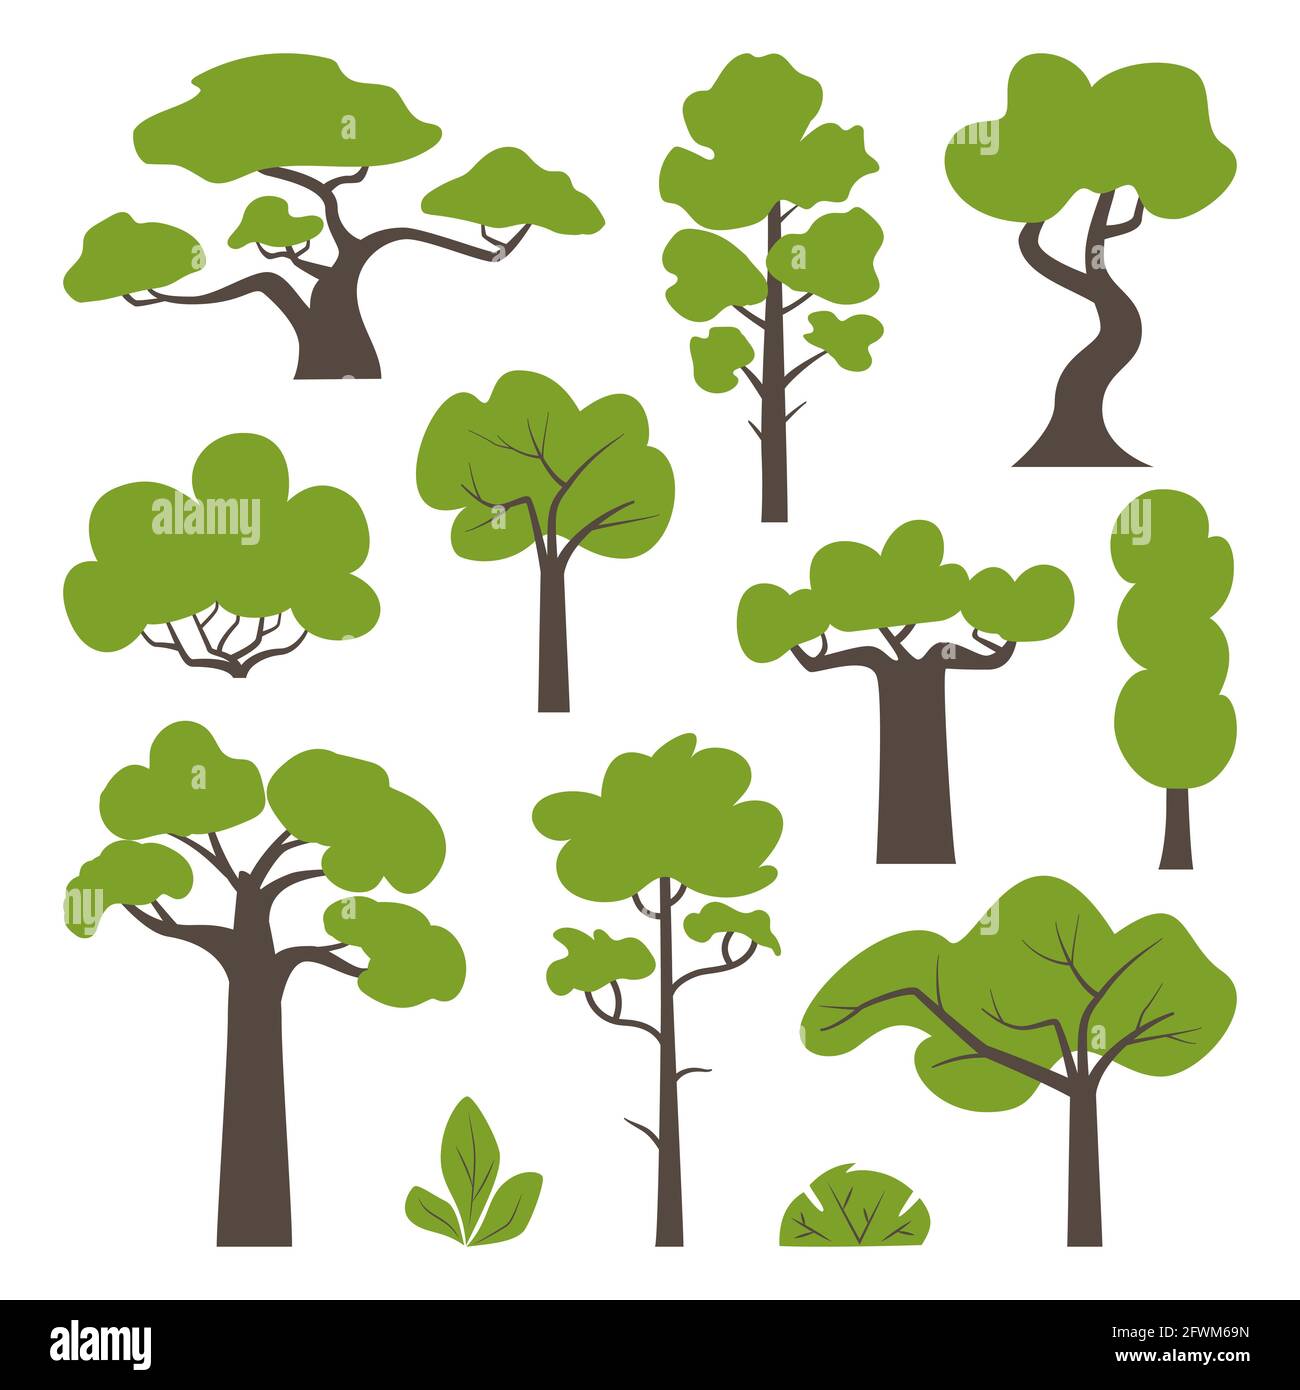 Großer Satz von verschiedenen grünen Bäumen und Sträuchern. Baum-Ikonen in einem modernen flachen Stil gesetzt. Vektorgrafik Stock Vektor